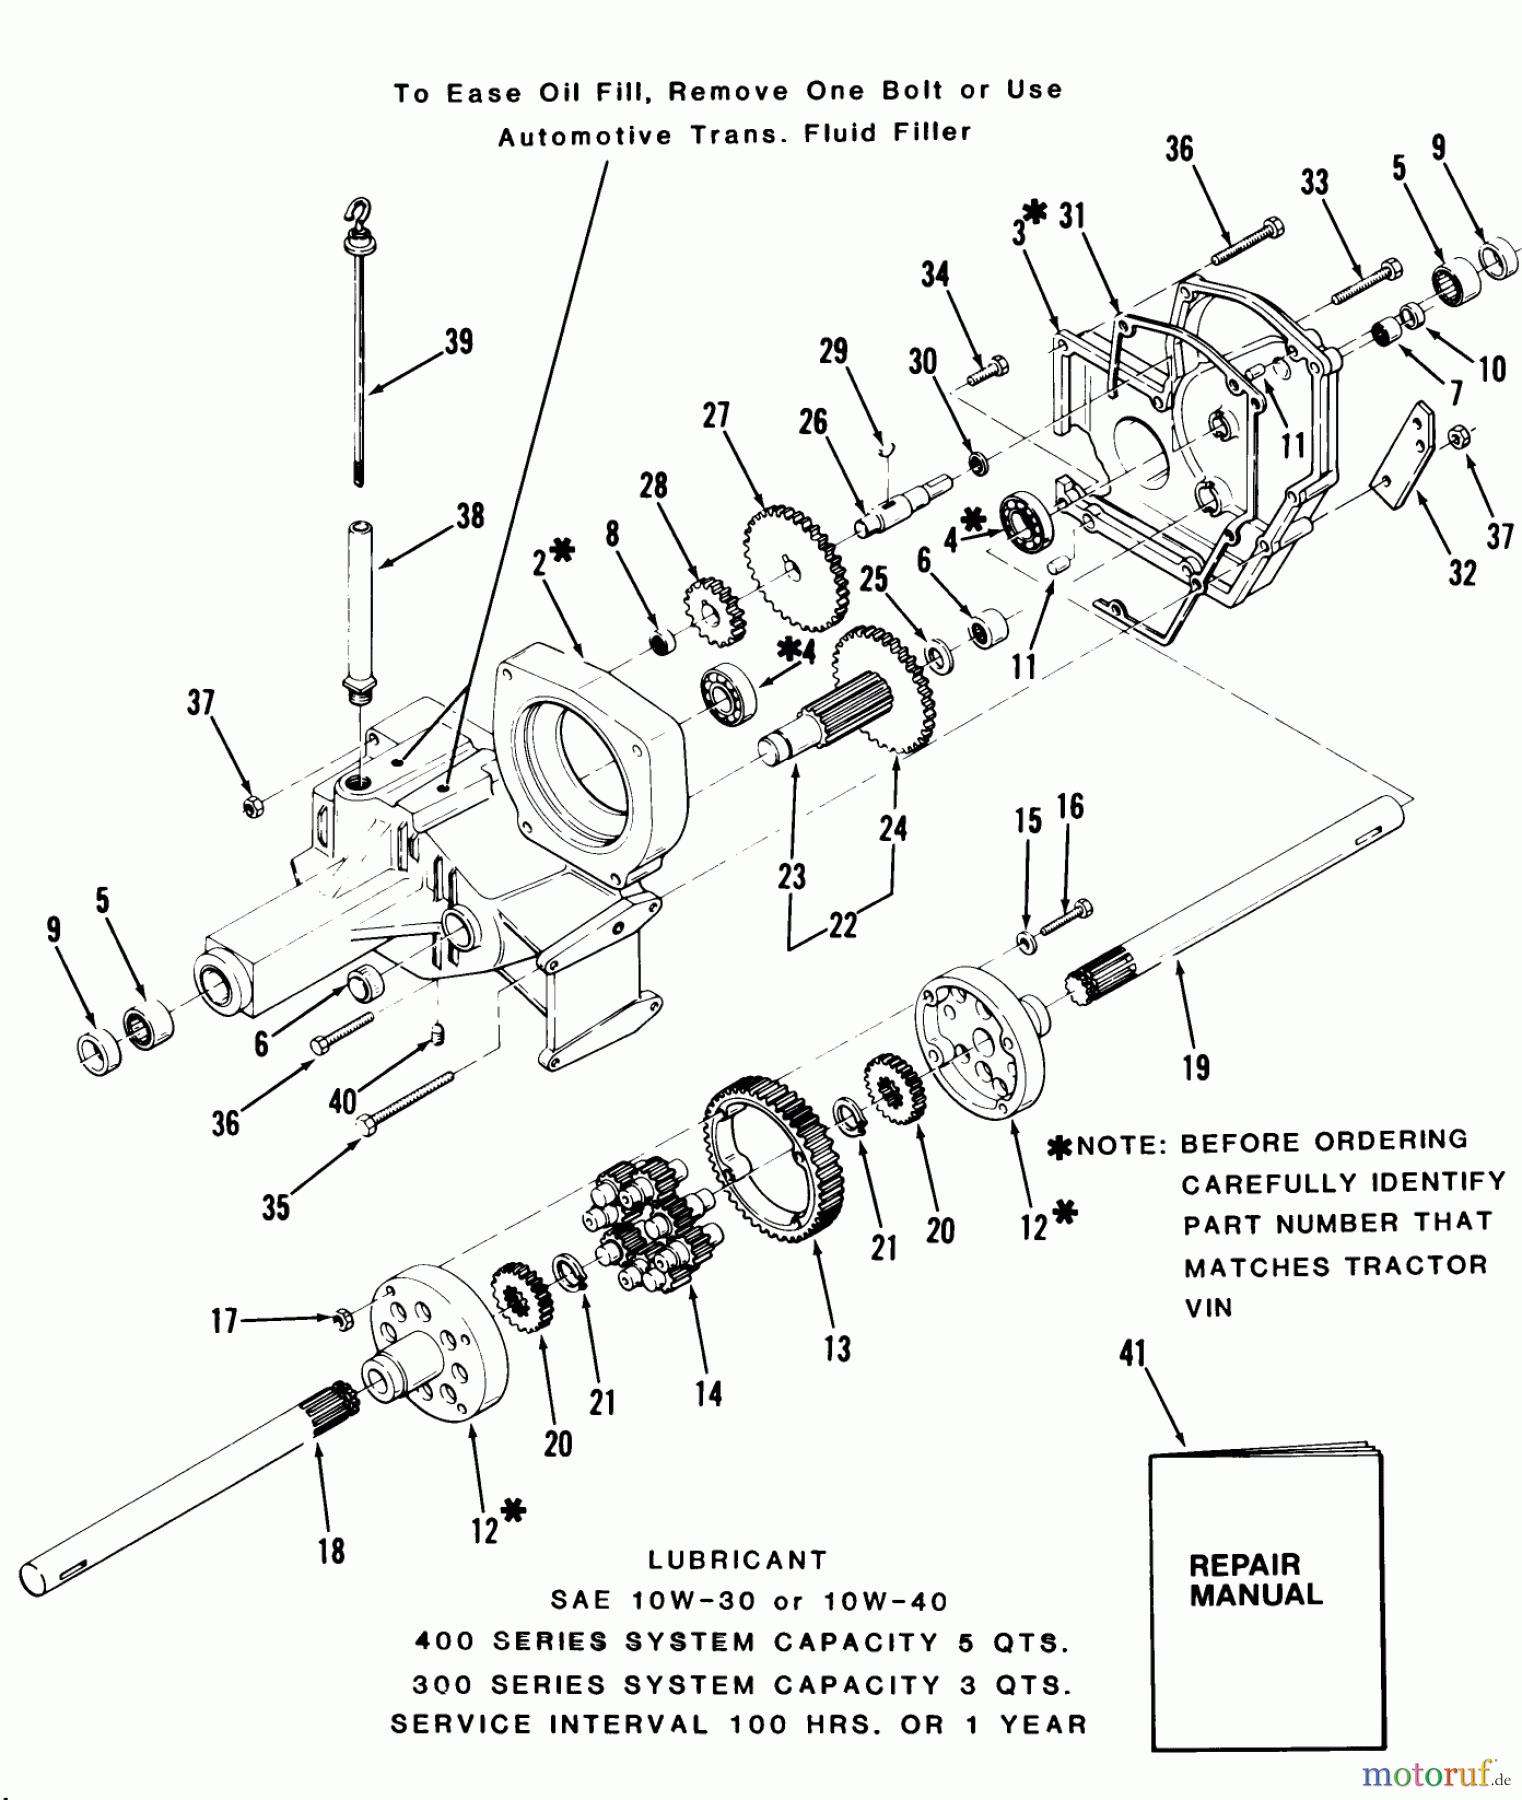  Toro Neu Mowers, Lawn & Garden Tractor Seite 1 21-12KE01 (312-A) - Toro 312-A Garden Tractor, 1986 TRANSAXLE